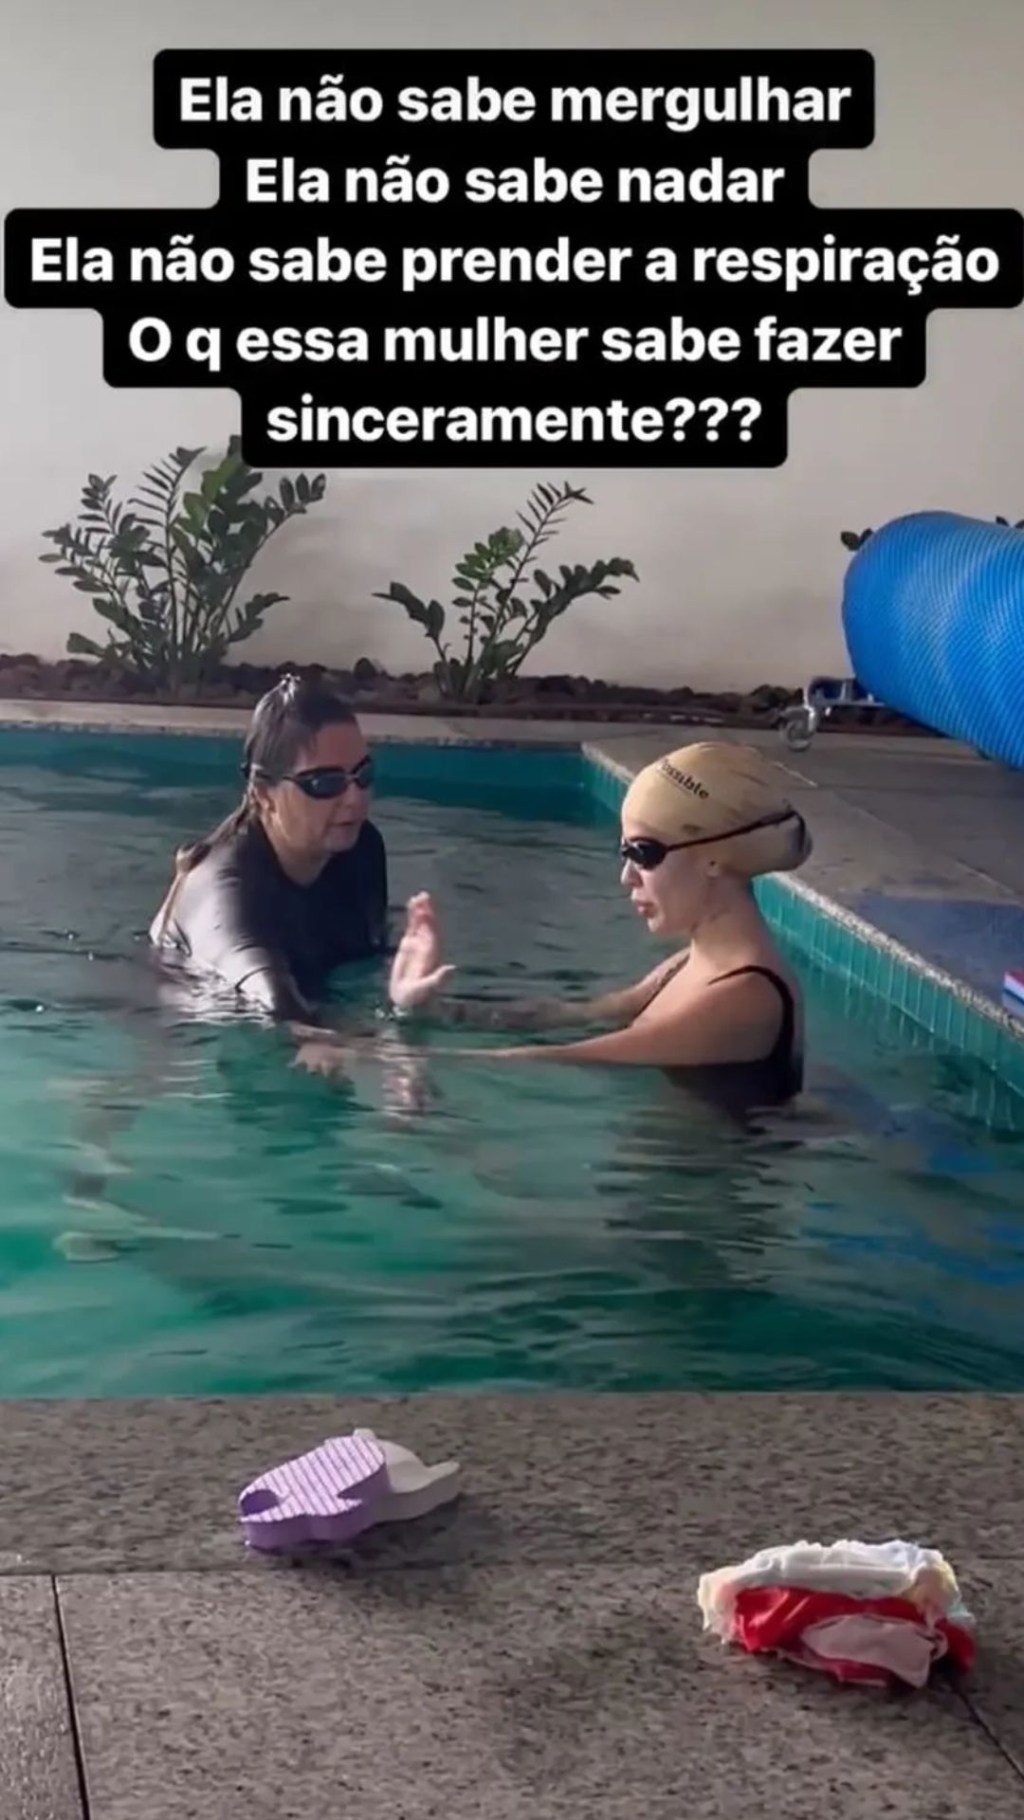 Karoline Lima praticando natação